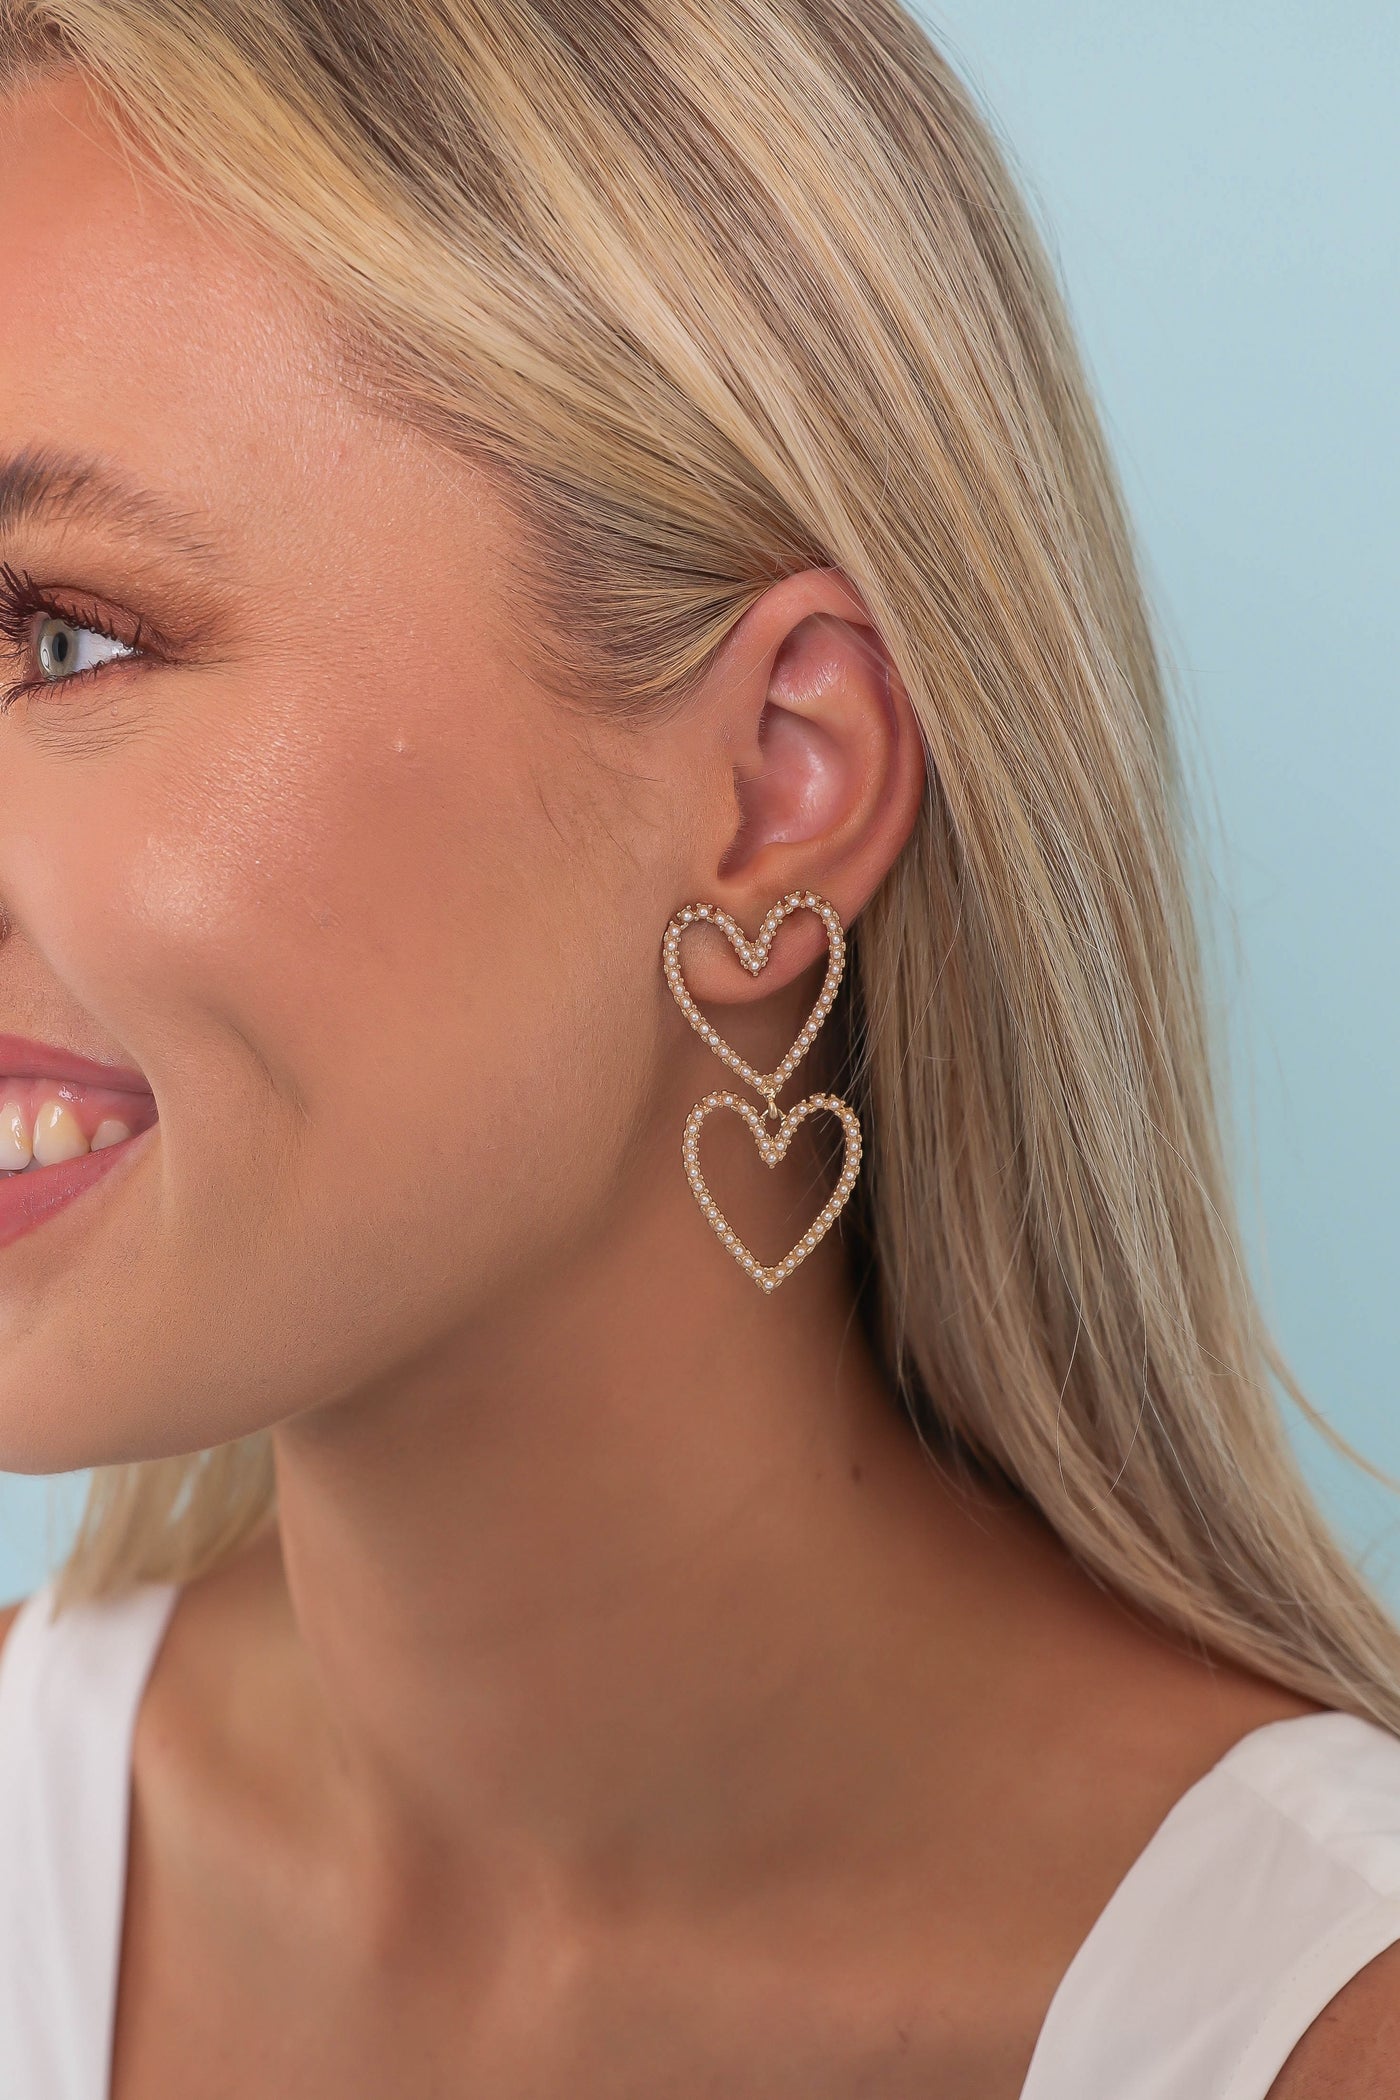 Pearl Heart Earrings- Double Heart Earrings- Women's Affordable Jewelry